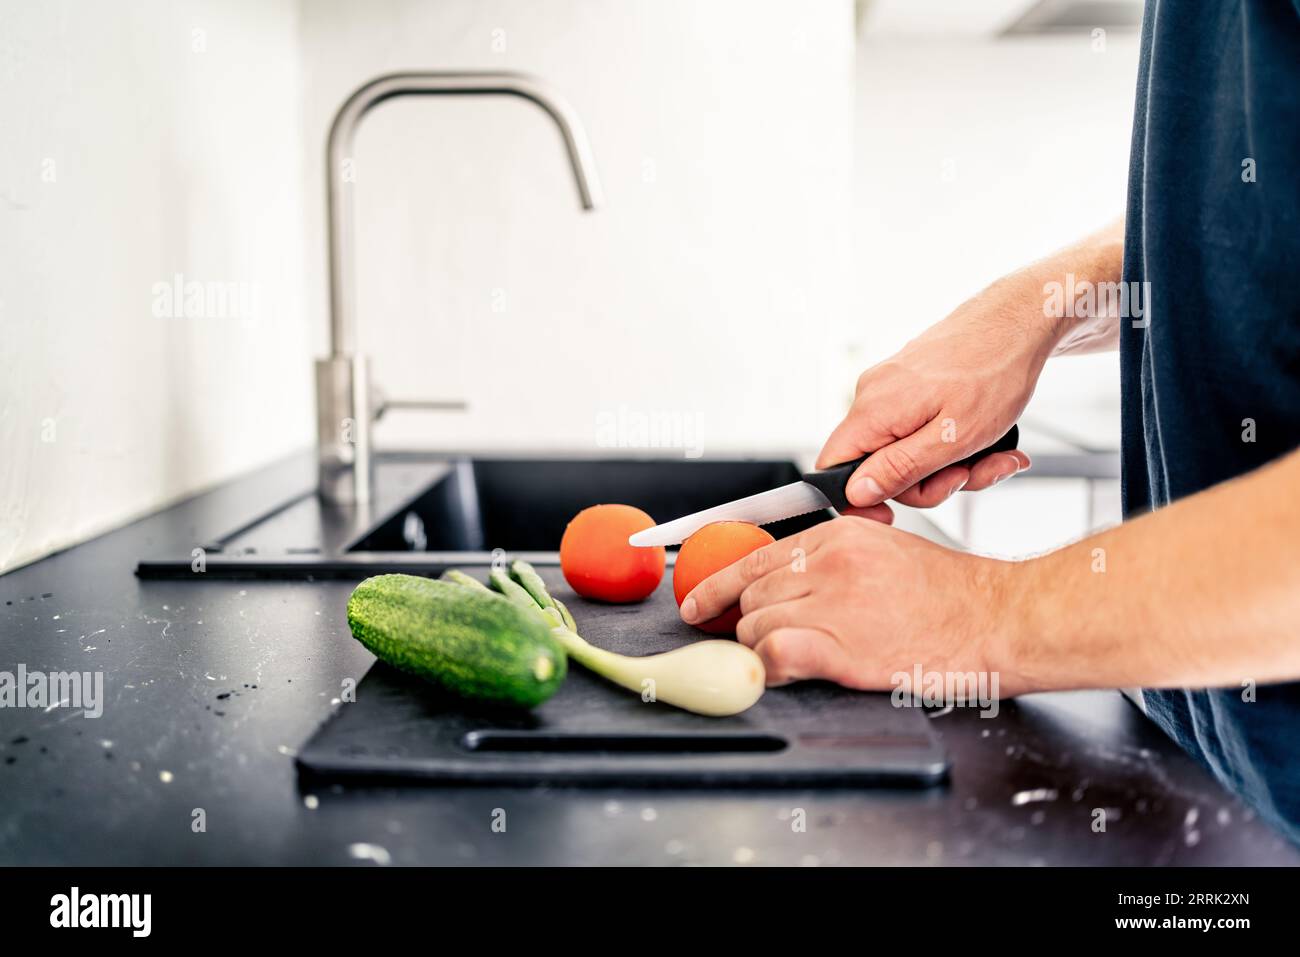 Tagliare l'insalata con un coltello affilato. Uomo che cucina. Tritare i pomodori e le verdure. Prepara il cibo nella cucina casalinga. Pasto vegetariano sano. Foto Stock